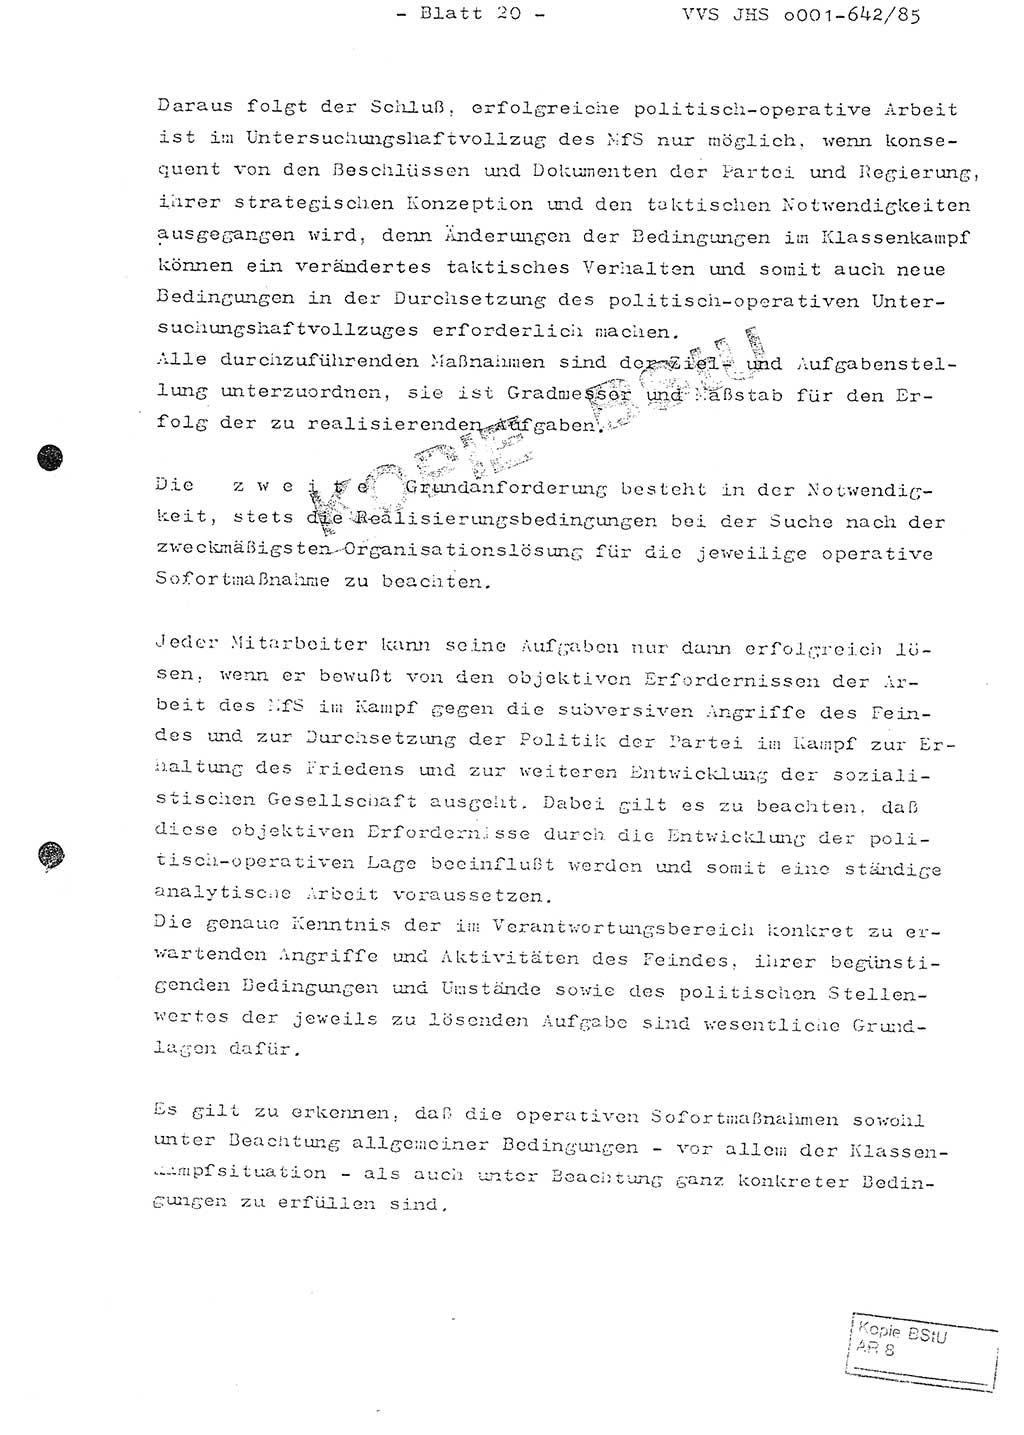 Fachschulabschlußarbeit Oberleutnant Lothar Fahland (Abt. ⅩⅣ), Ministerium für Staatssicherheit (MfS) [Deutsche Demokratische Republik (DDR)], Juristische Hochschule (JHS), Vertrauliche Verschlußsache (VVS) o001-642/85, Potsdam 1985, Blatt 20 (FS-Abschl.-Arb. MfS DDR JHS VVS o001-642/85 1985, Bl. 20)